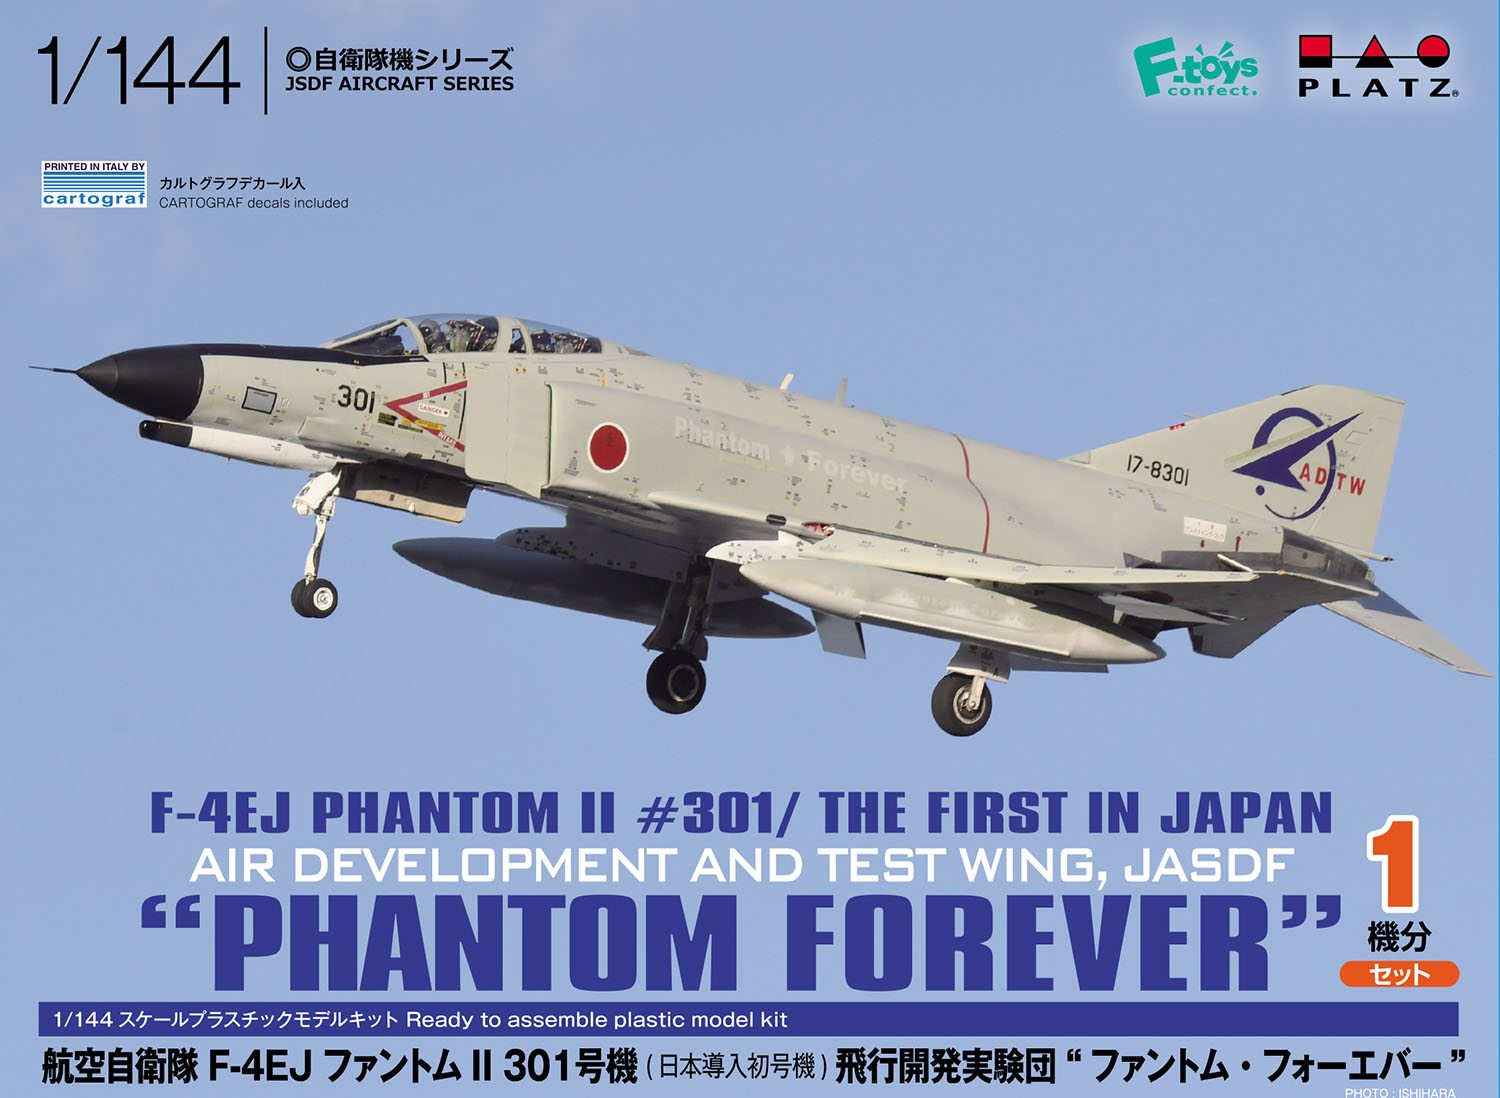 1/144 航空自衛隊 F-4EJ ファントムII 301号機(日本導入初号機) 飛行開発実験団 "ファントム･フォーエバー" - ウインドウを閉じる